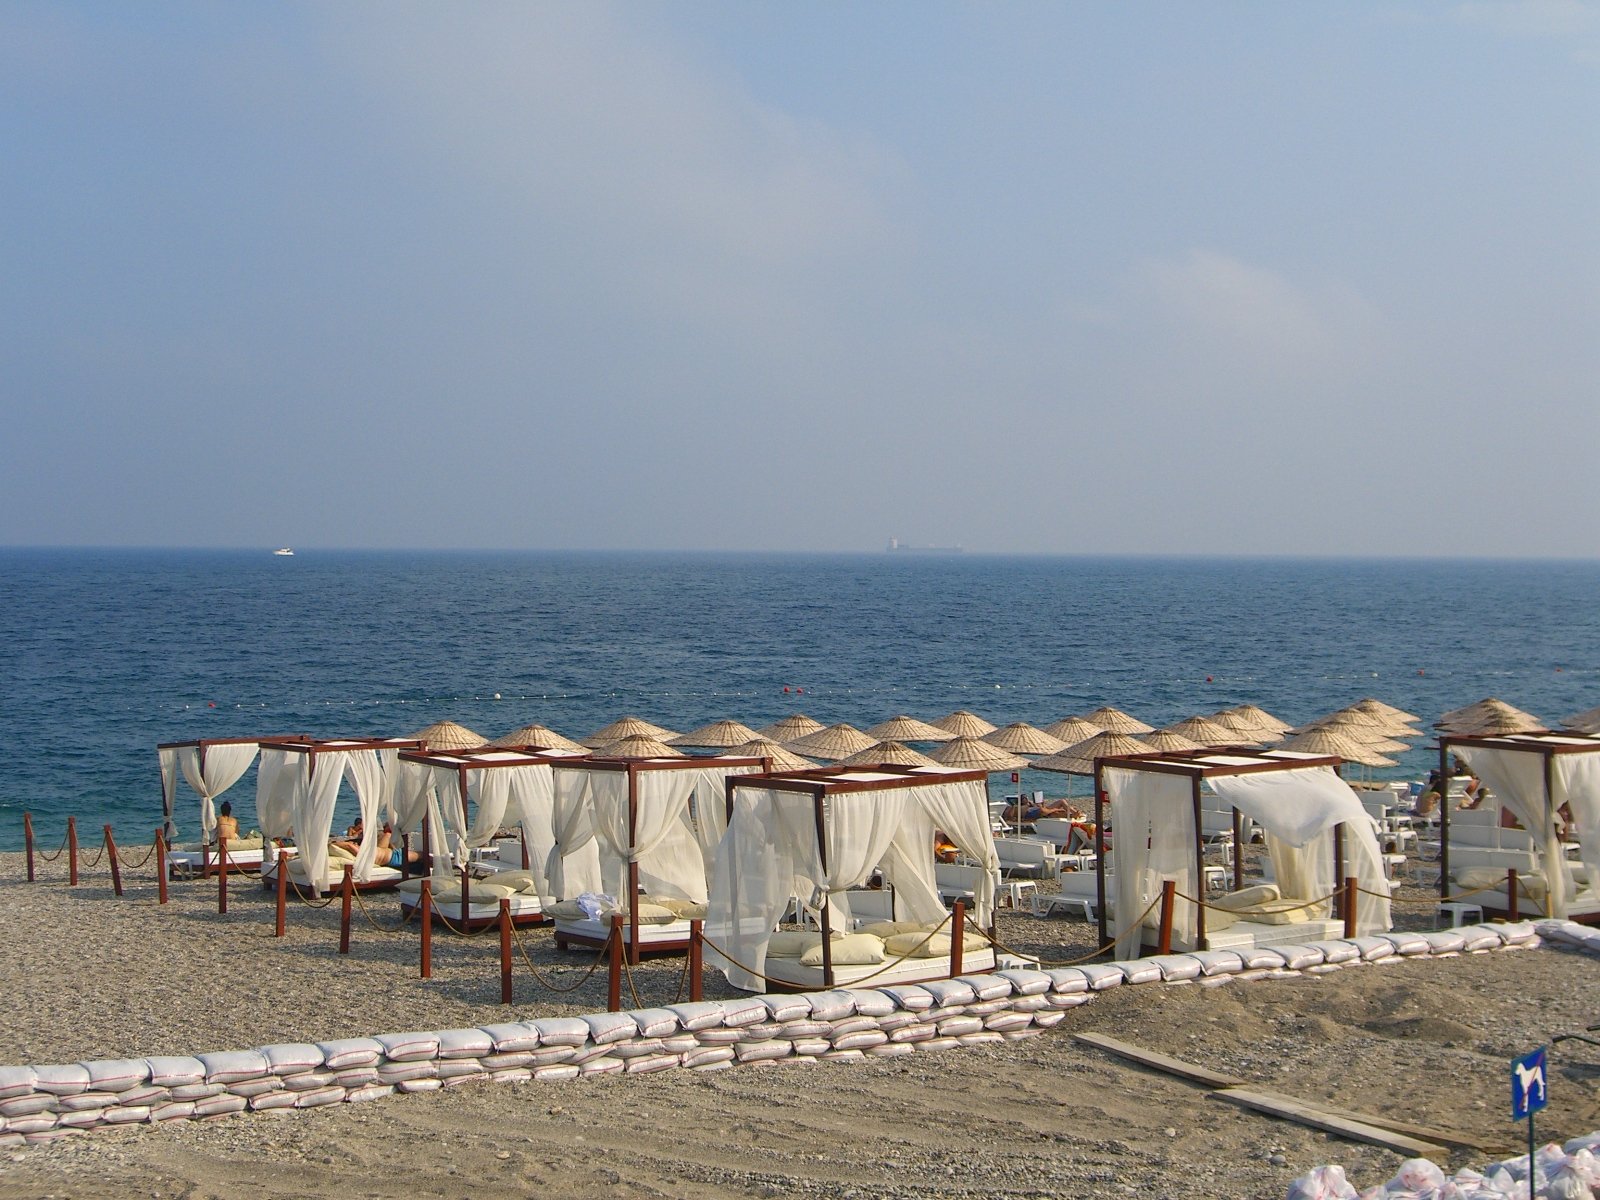 Пляжи Анталии - стандарт качества под Голубым флагом